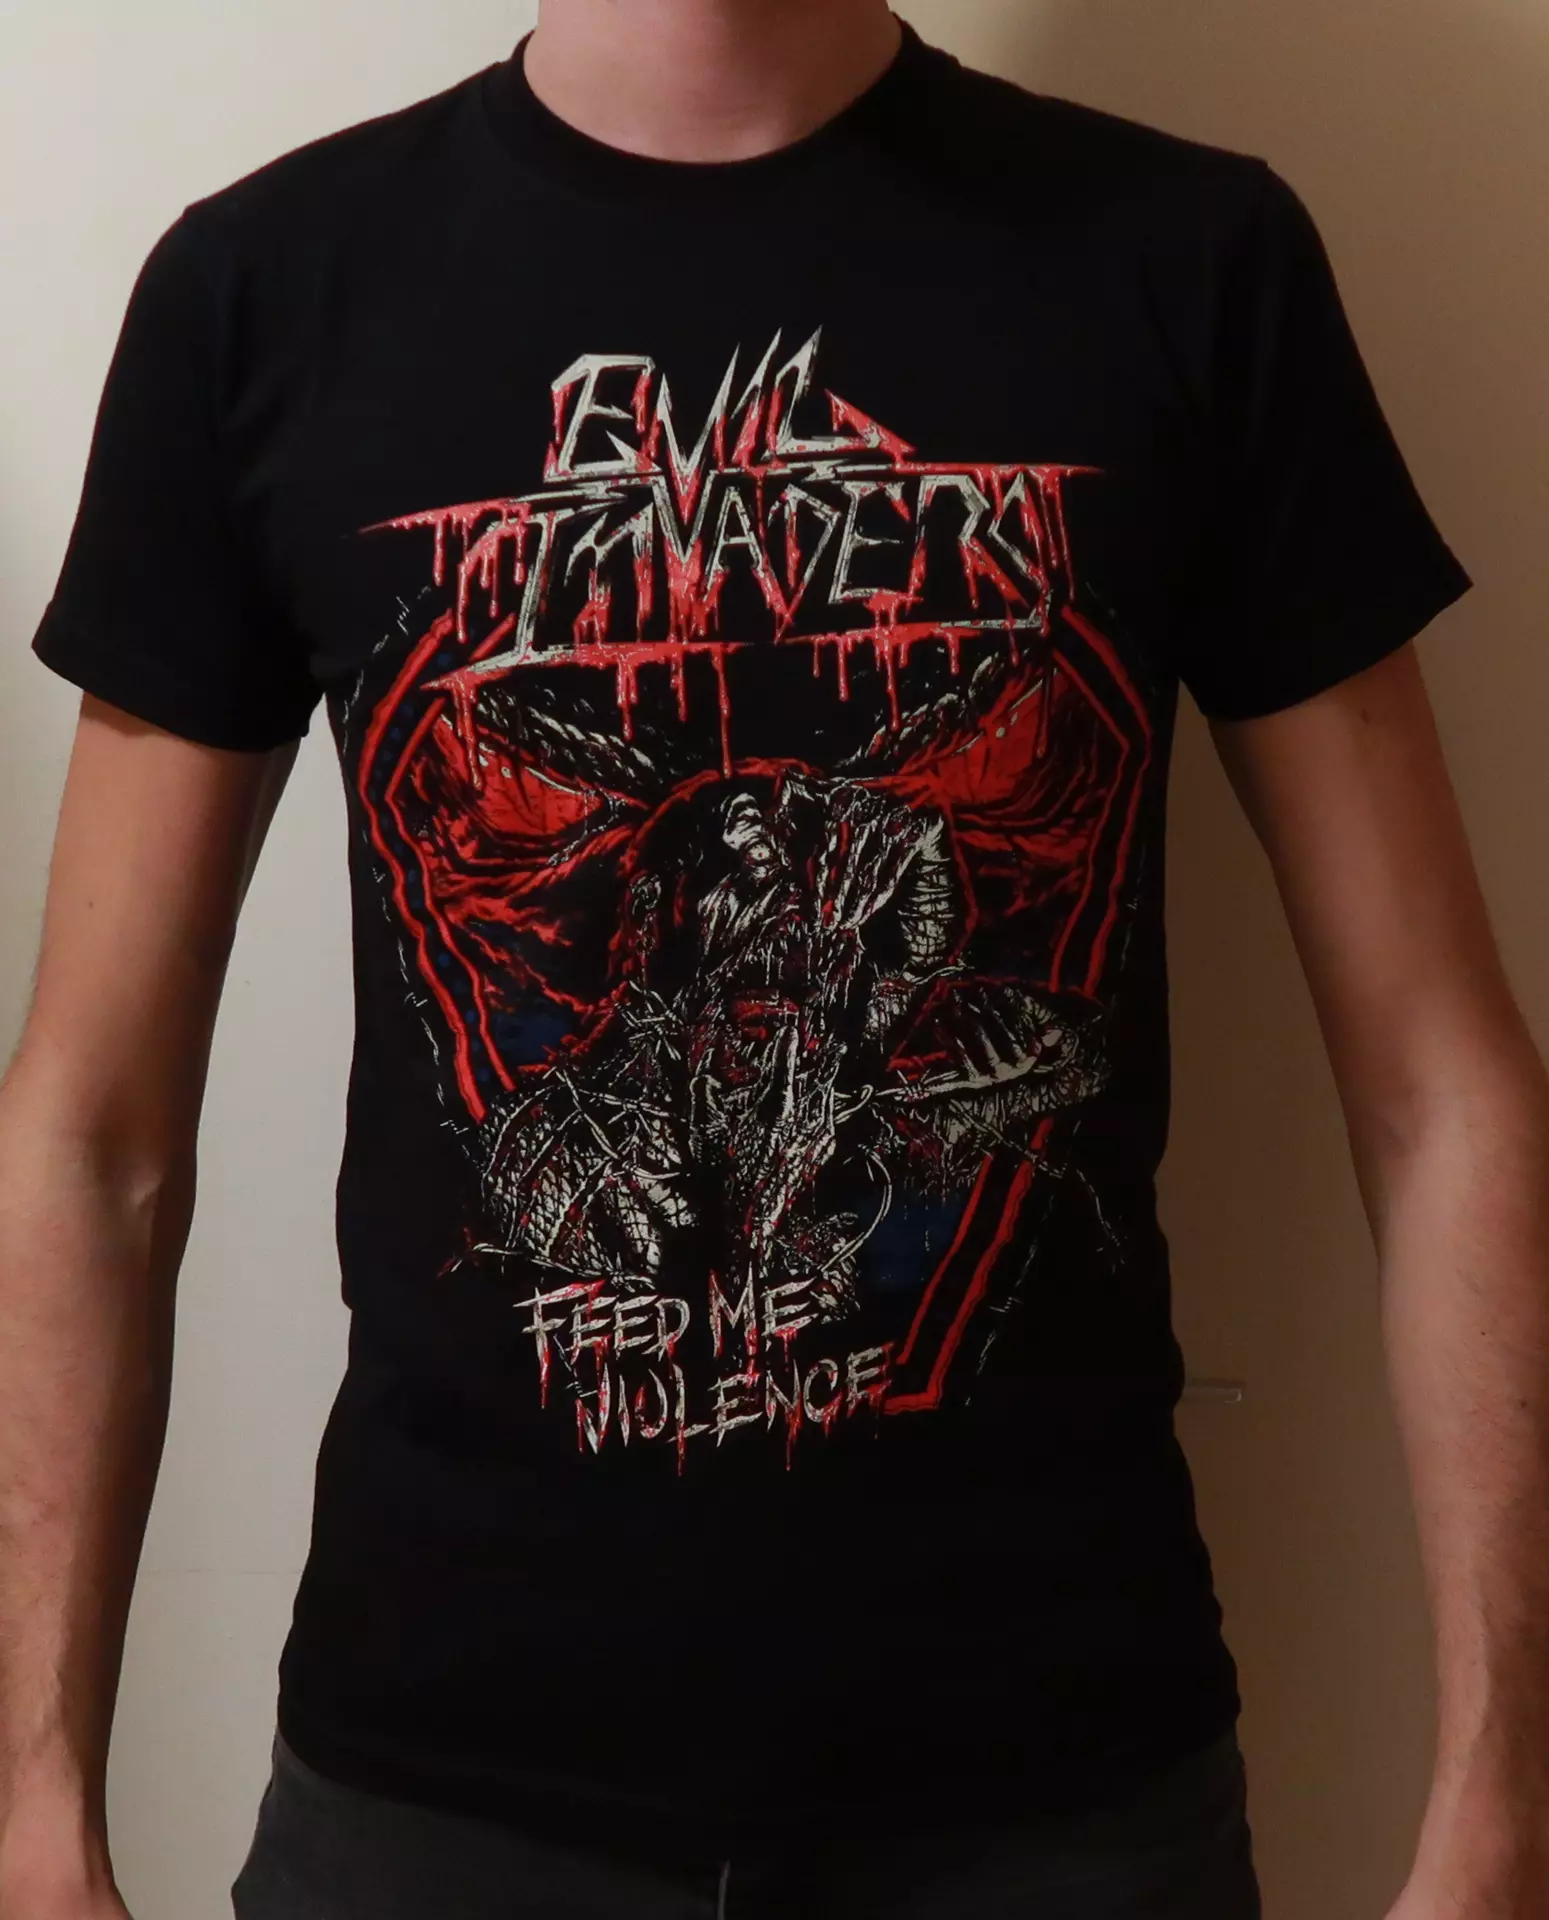 EVIL INVADERS - Feed Me Violence Black Shirt